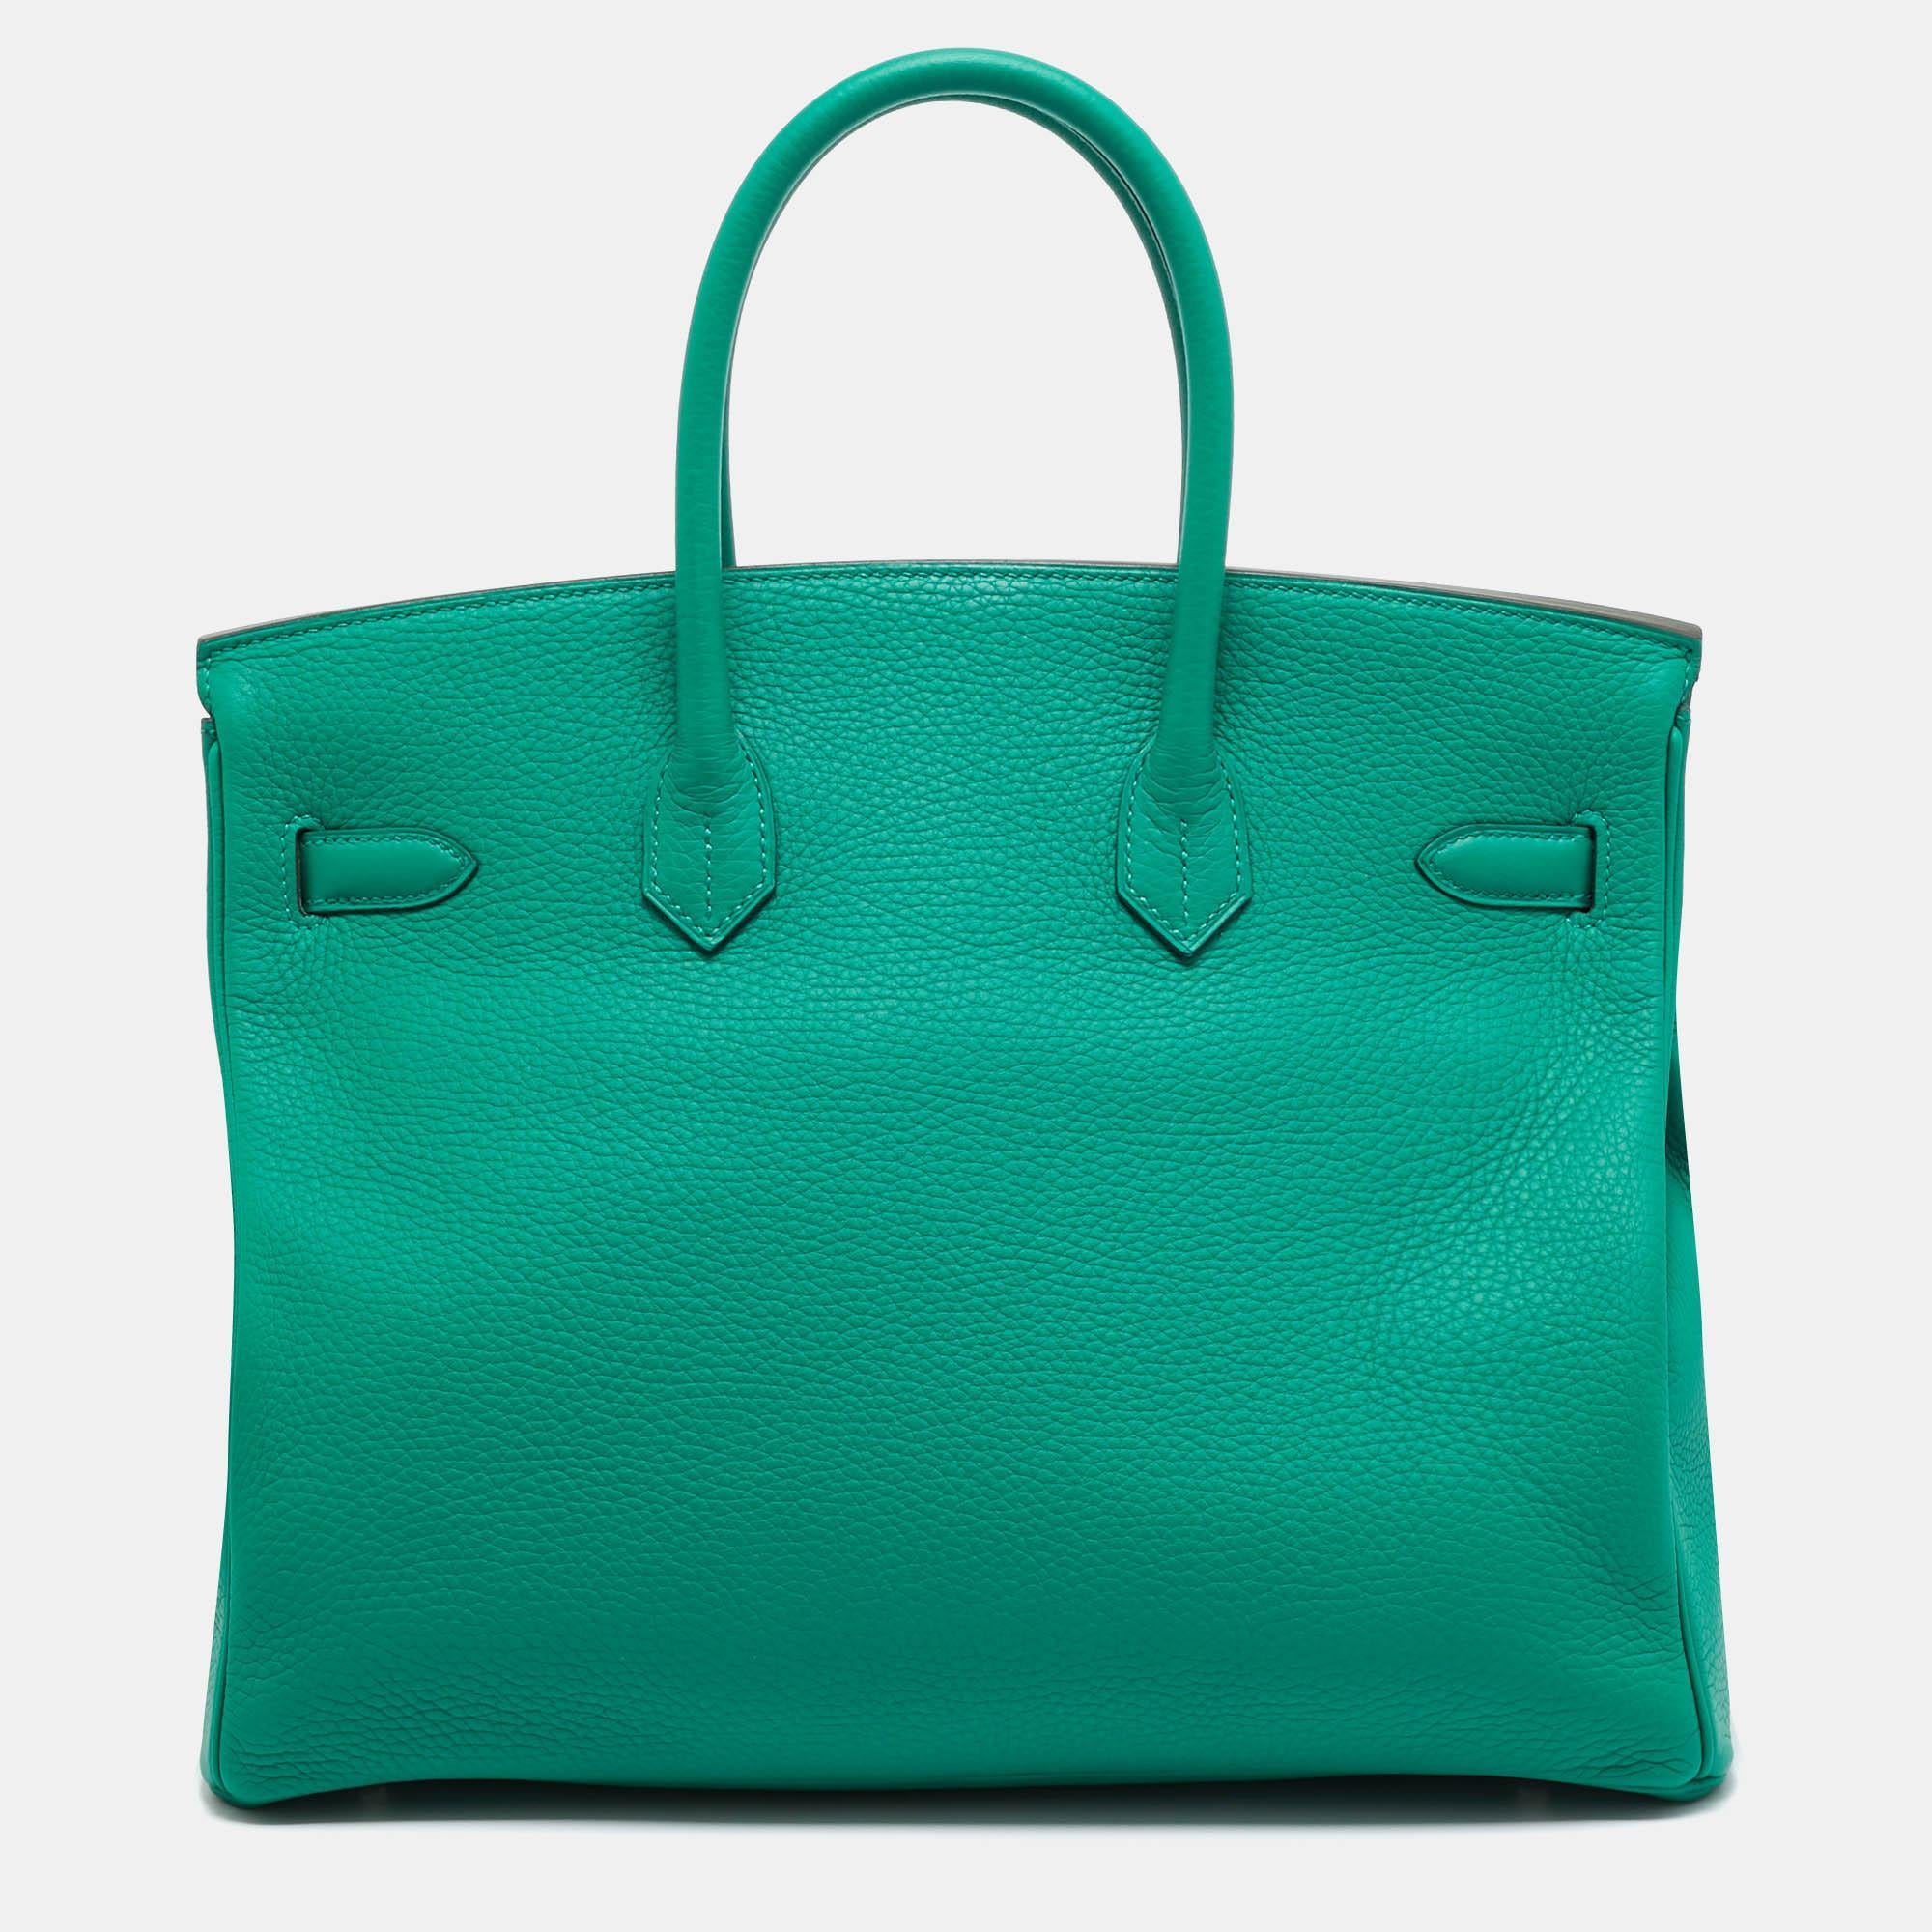 Die Hermès Birkin ist zu Recht eine der begehrtesten Handtaschen der Welt. Die Birkin wird von erfahrenen Kunsthandwerkern in stundenlanger Handarbeit aus hochwertigem Leder hergestellt. Diese Birkin 35 Tasche mit zwei Rollen, glänzenden Beschlägen